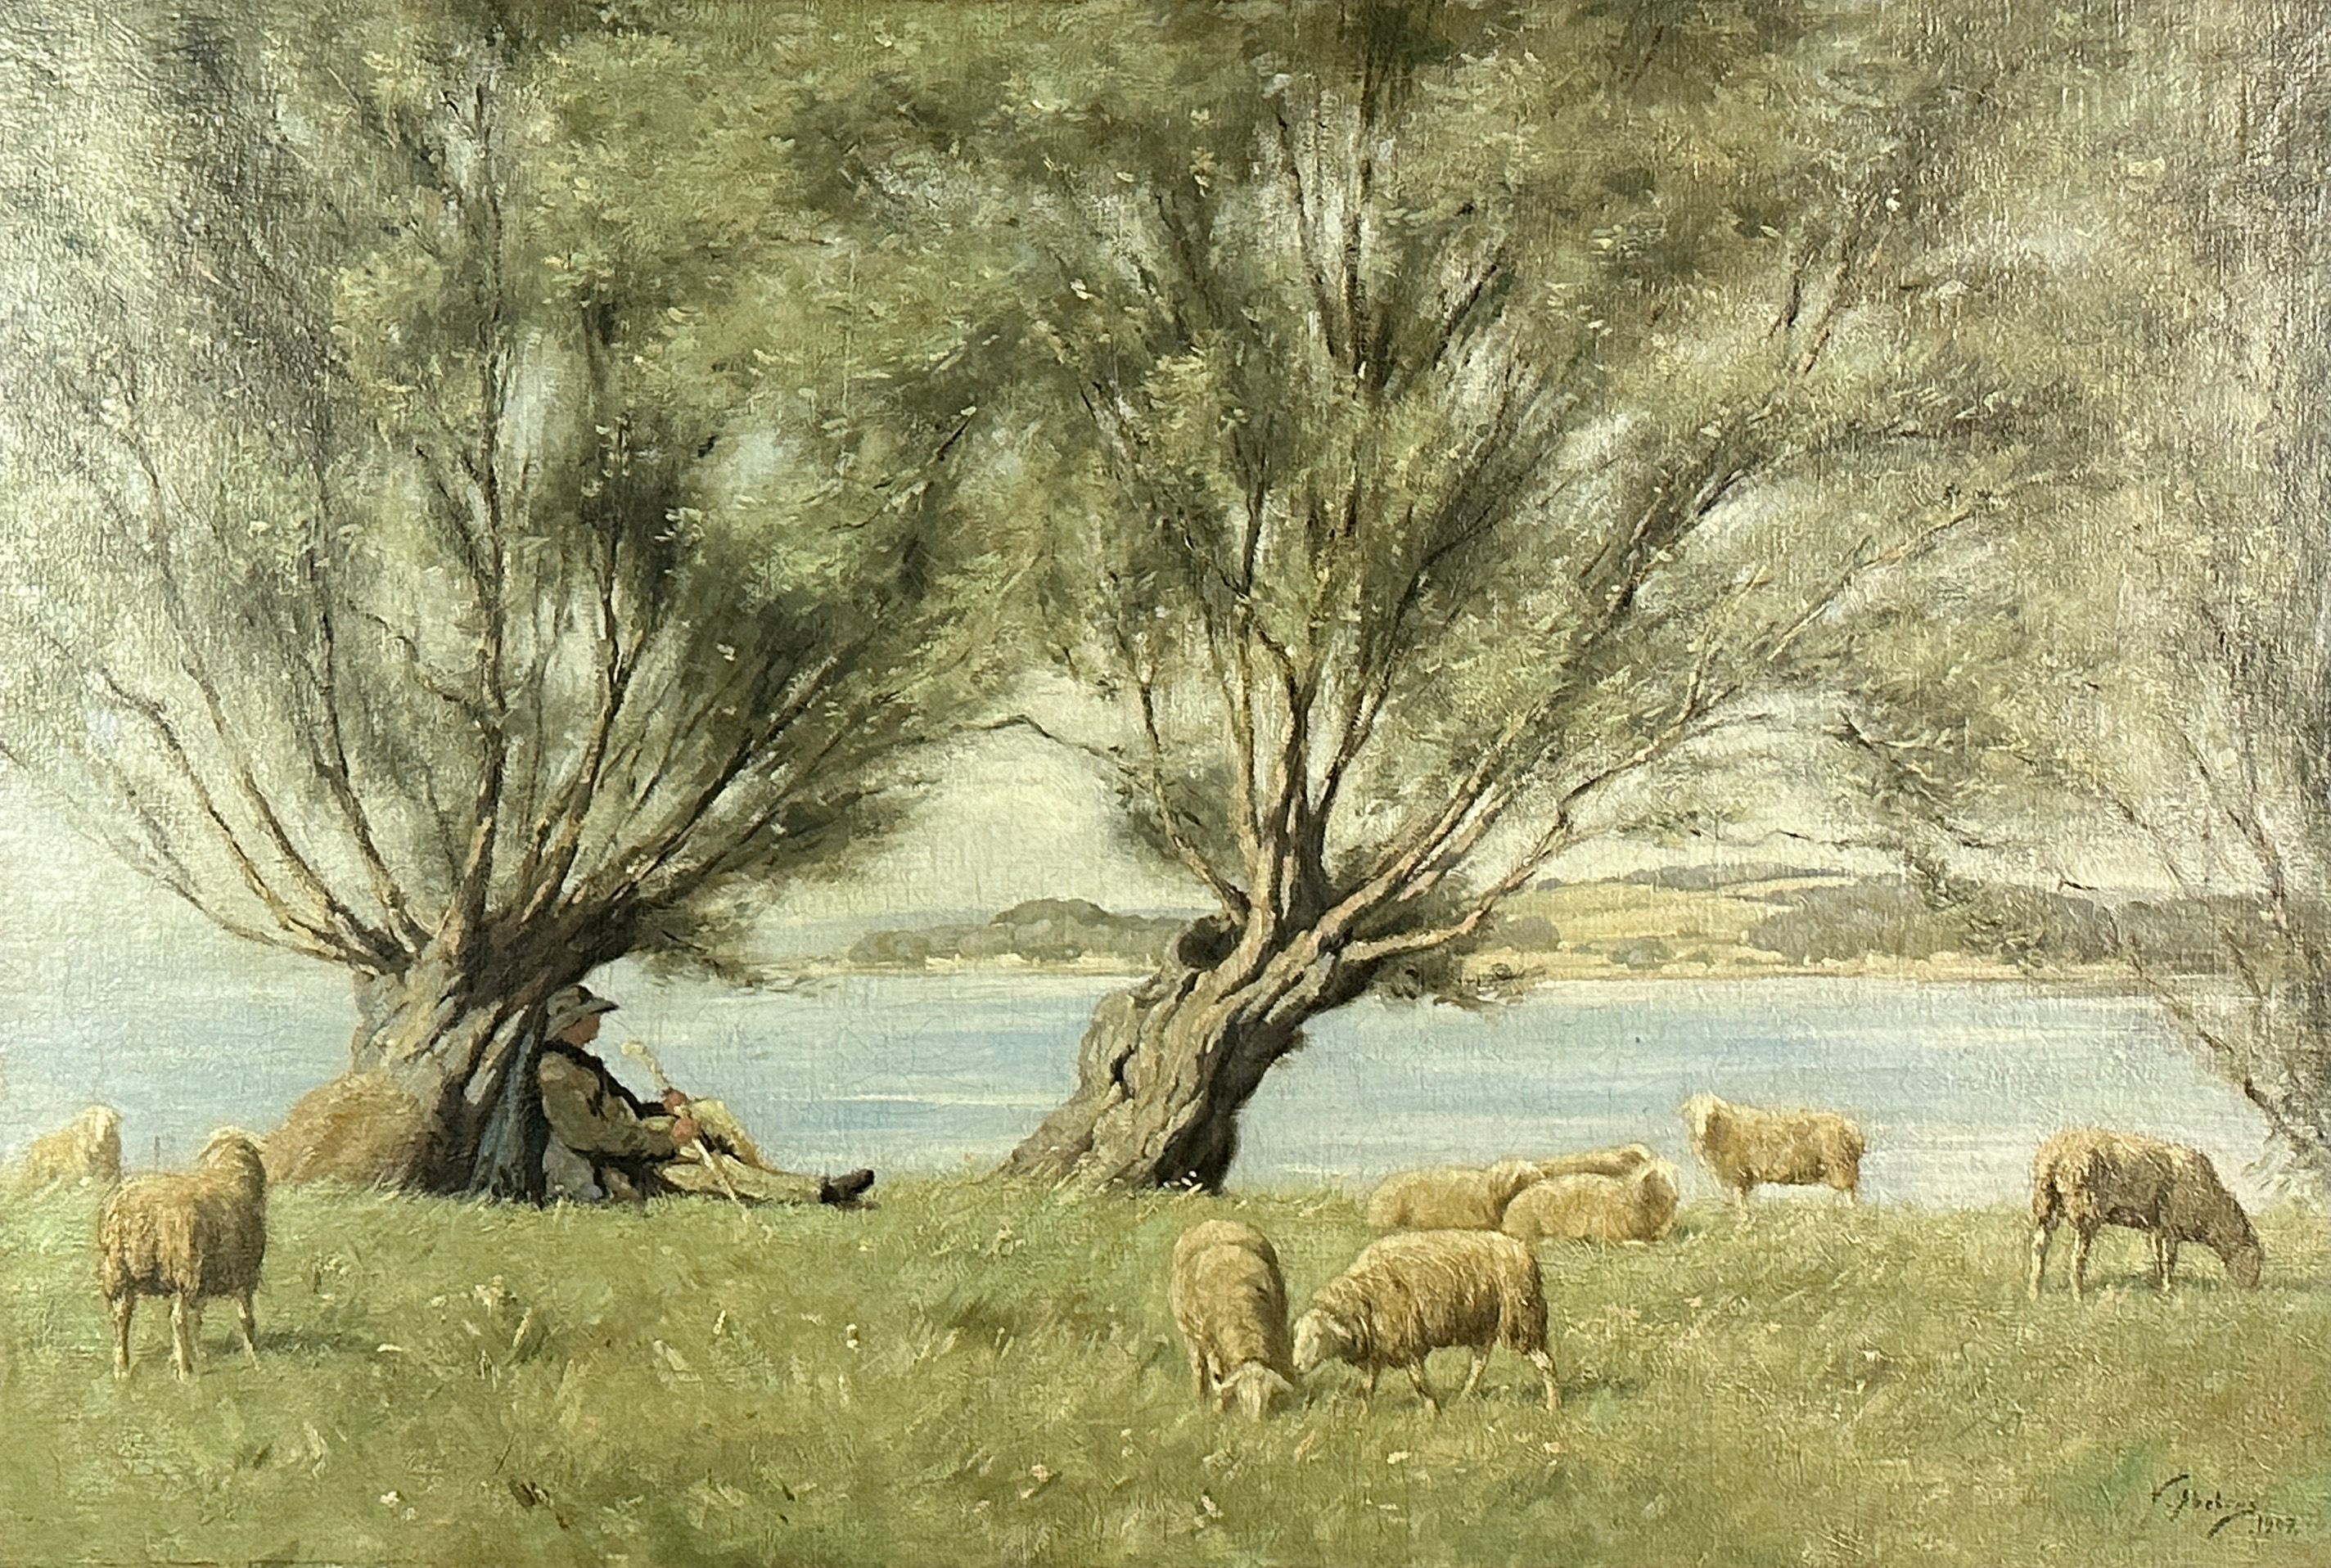 Victor ABELOOS (1881 - 1965). Resting shepherd. Dated 1907.